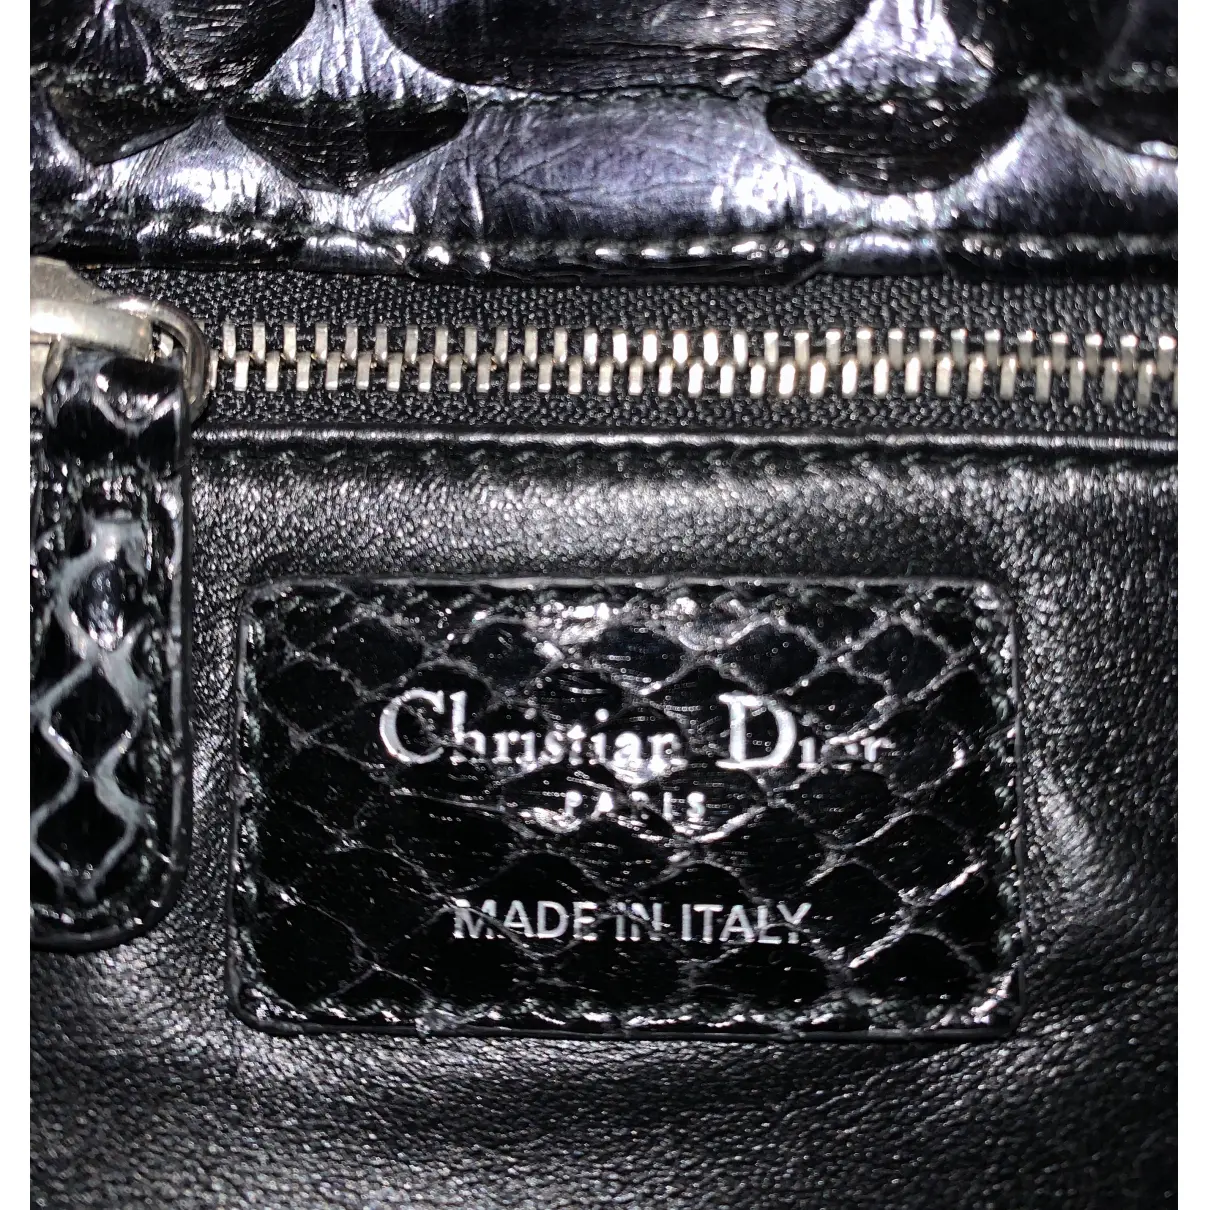 Lady Dior python handbag Dior